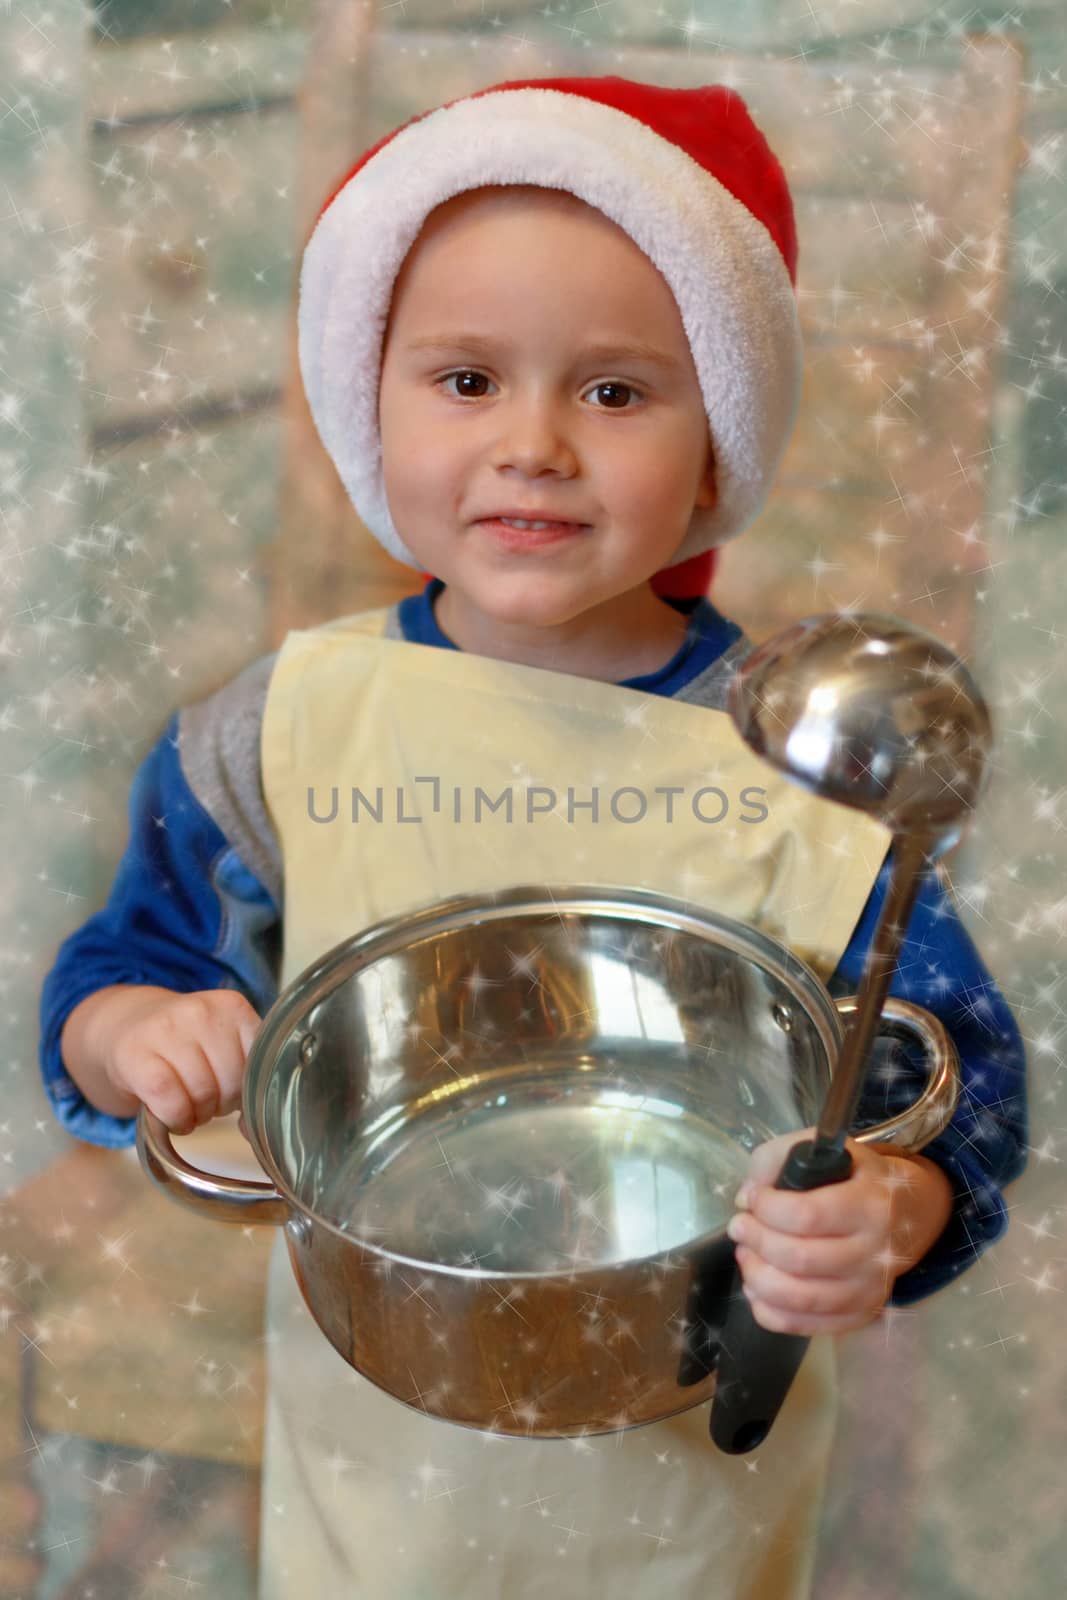 Christmas cooker by Lessadar